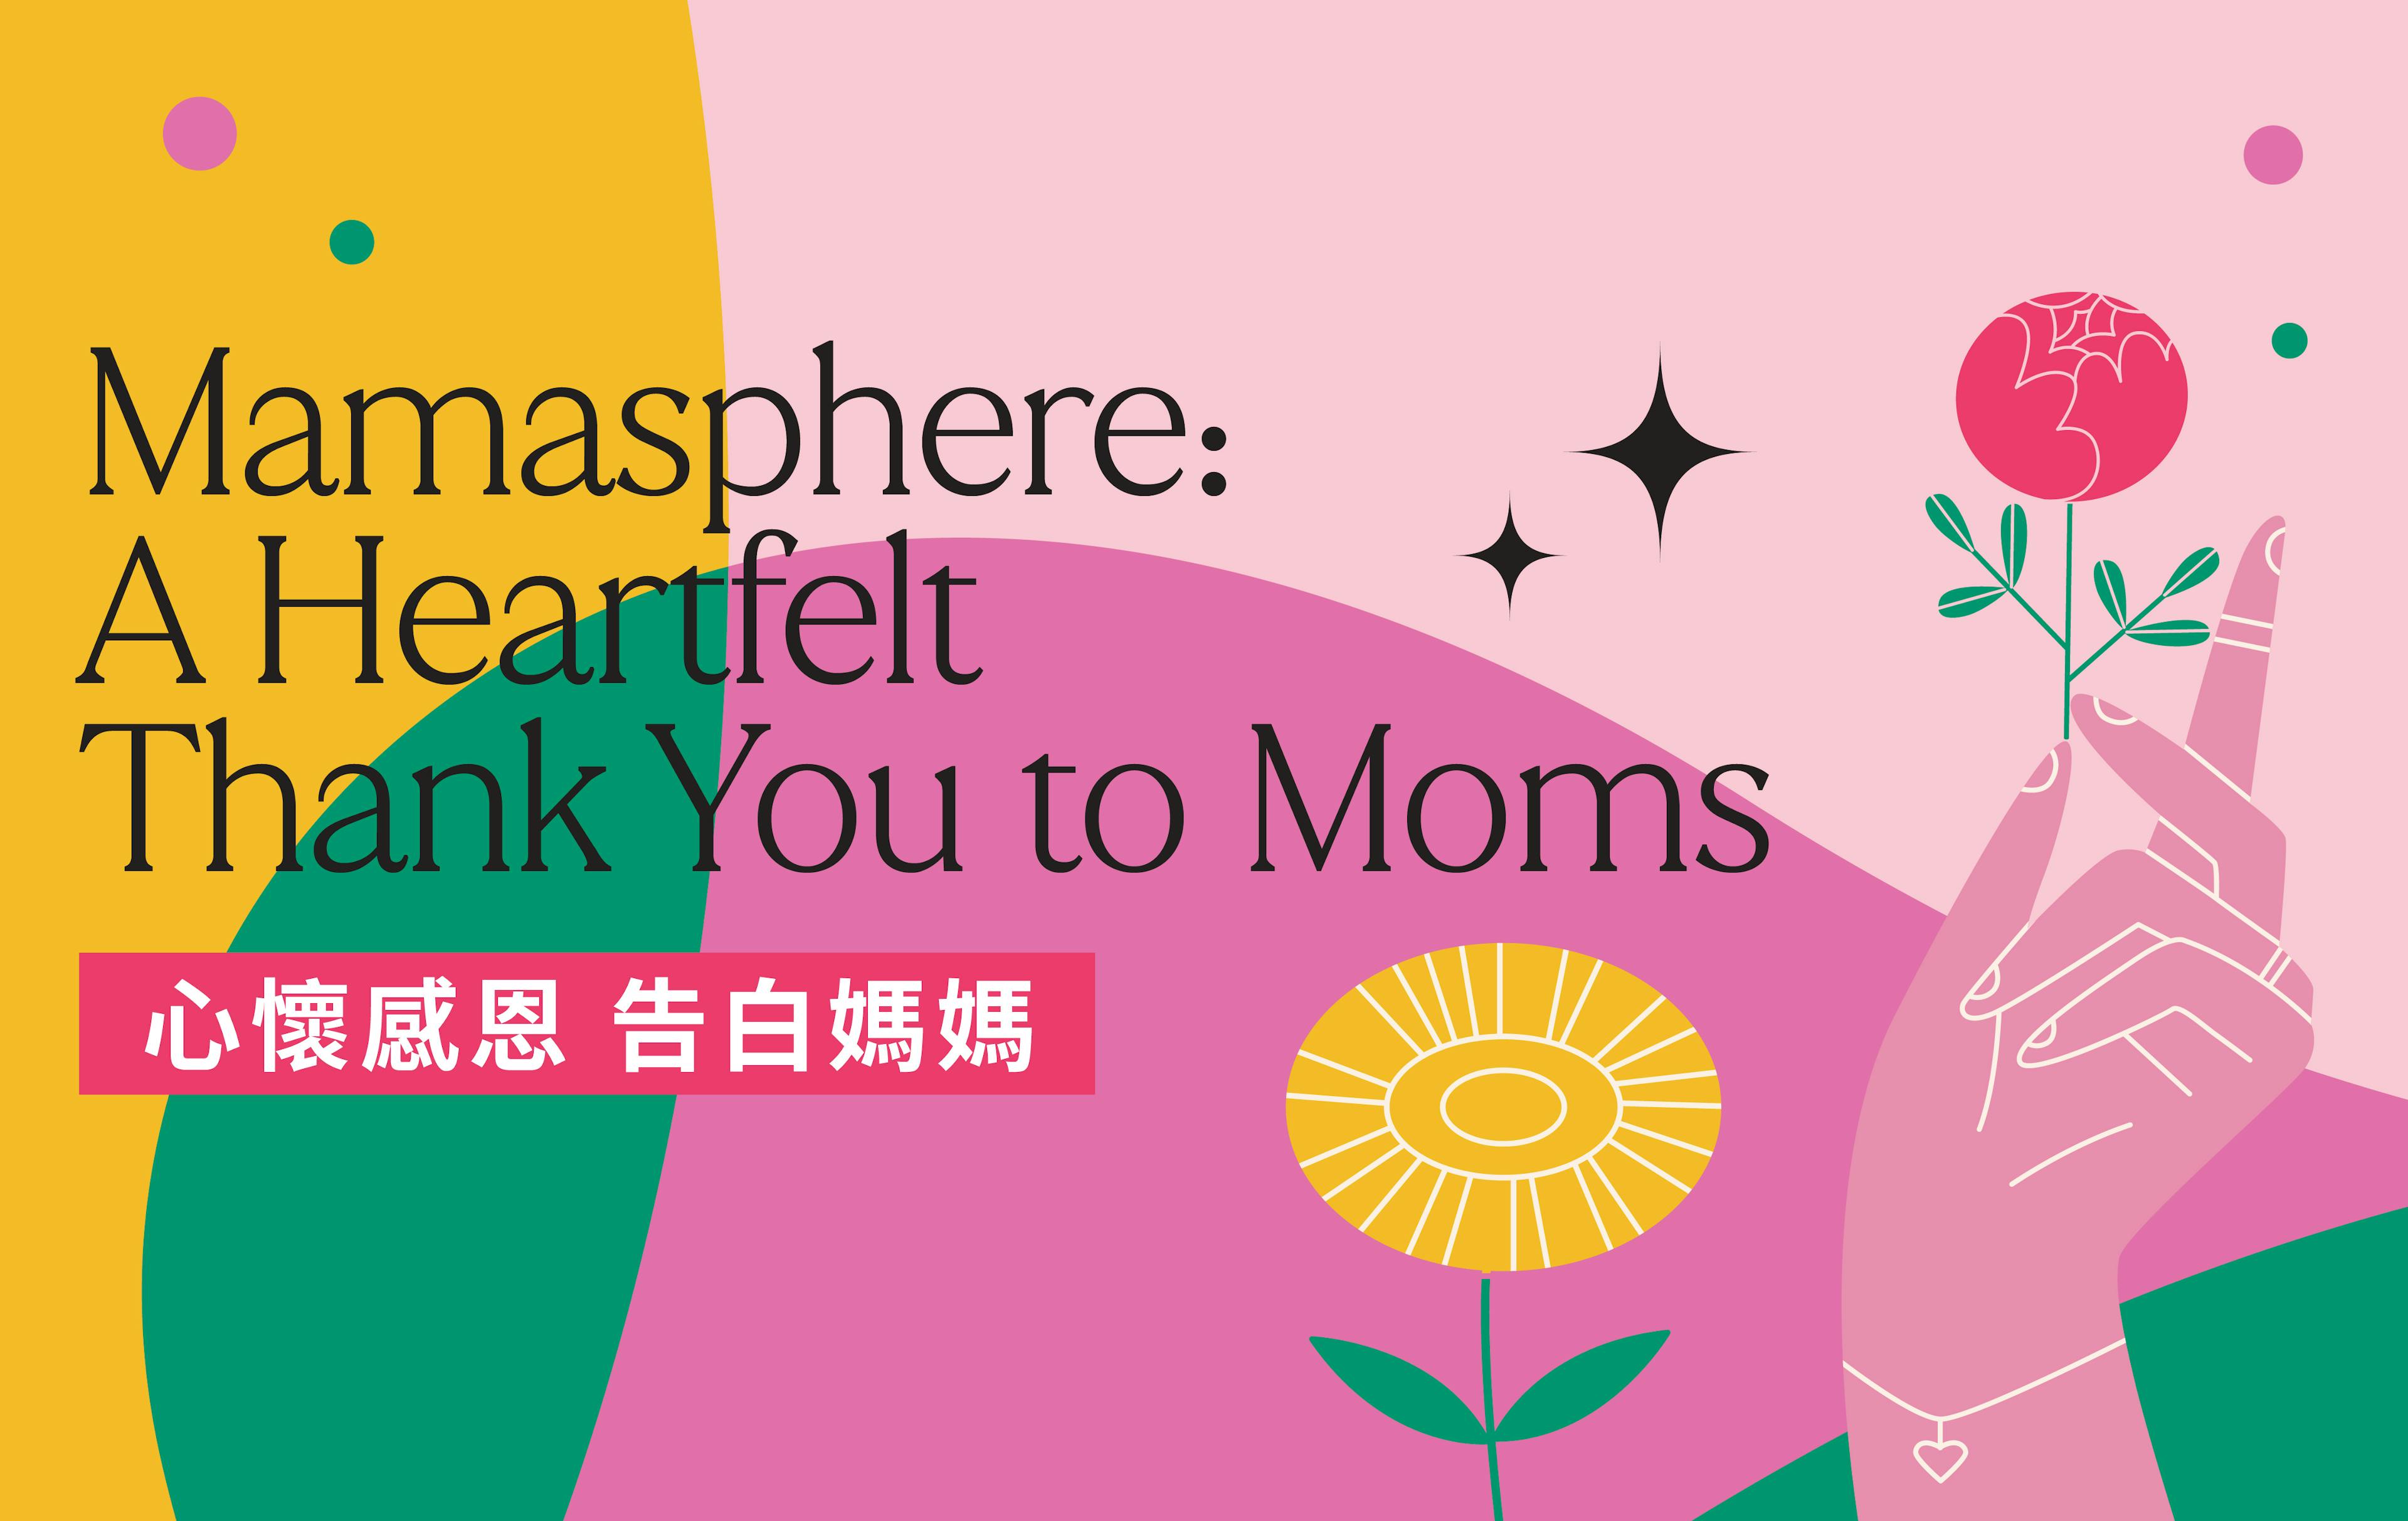 中環街市母親節呈獻連串驚喜活動 心懷感恩 告白媽媽